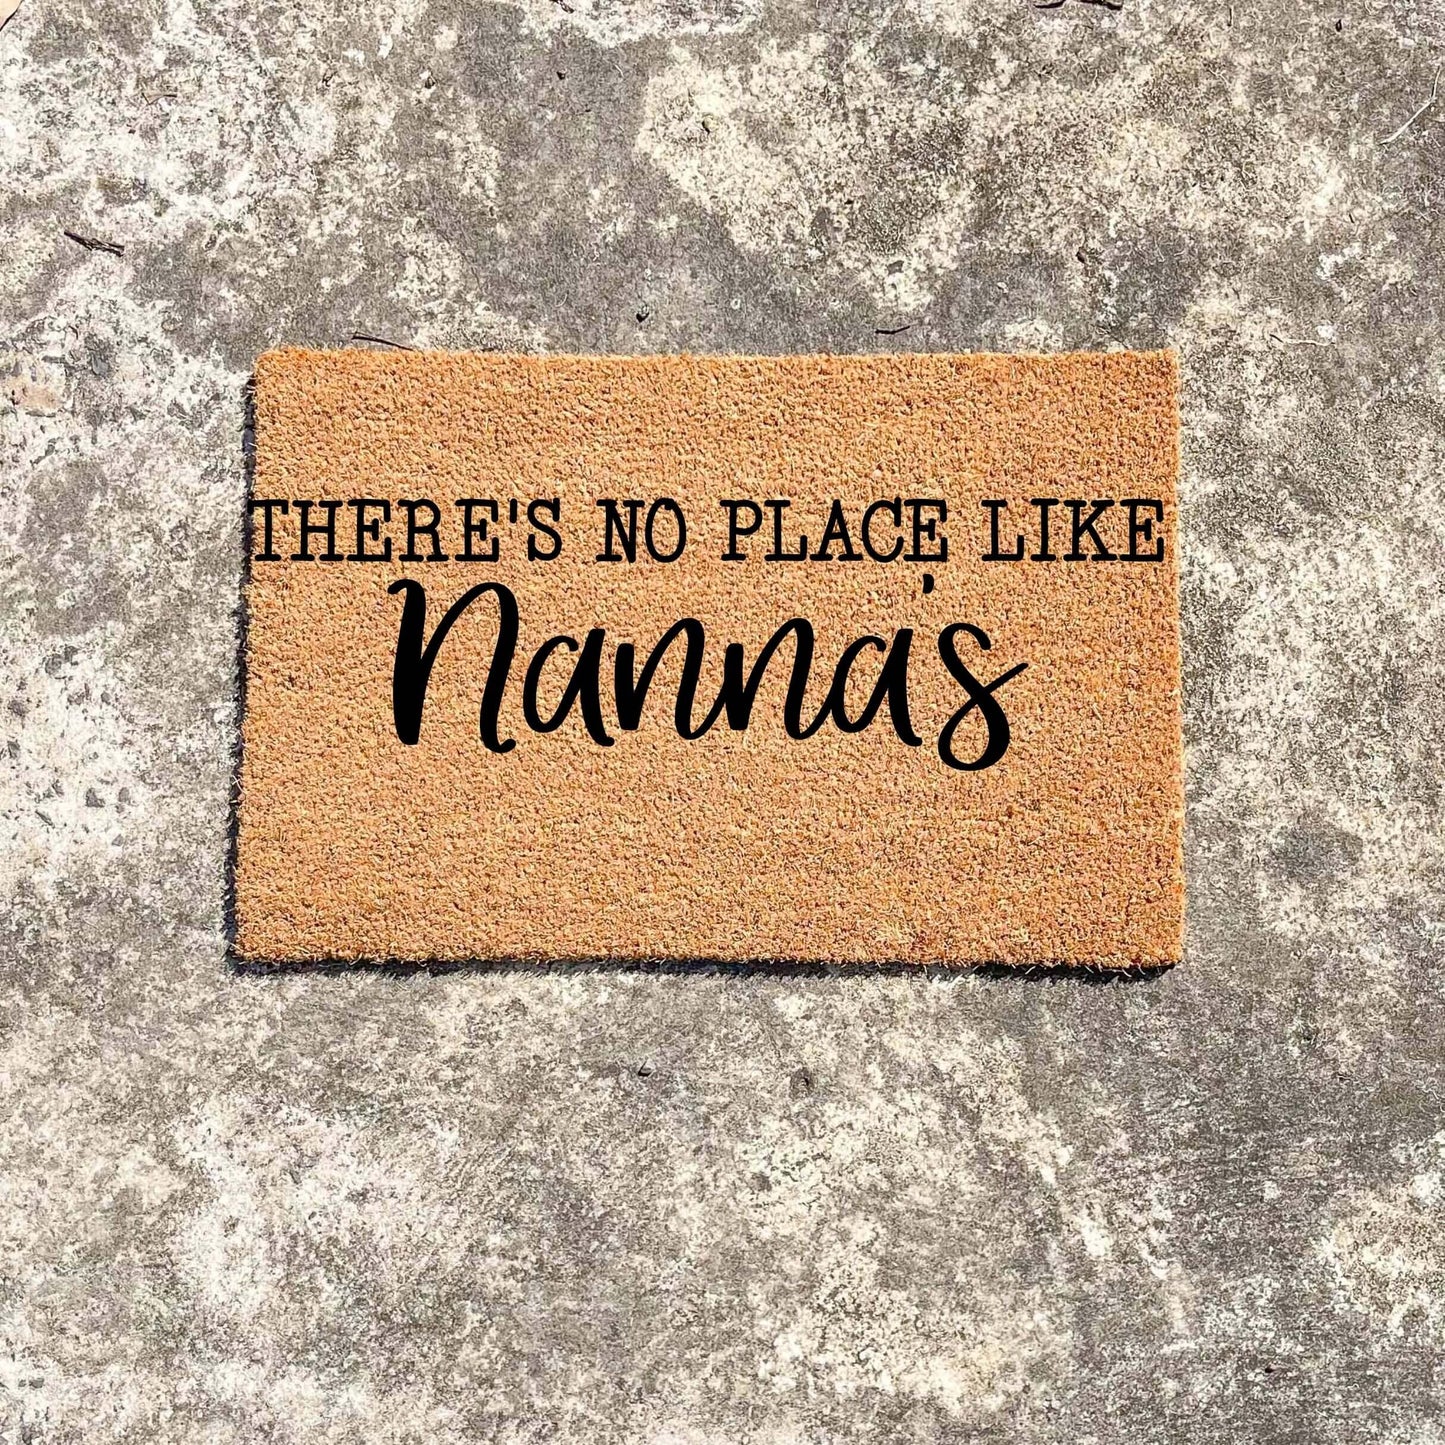 There's no place like Nanna's doormat, custom doormat, personalised doormat, door mat